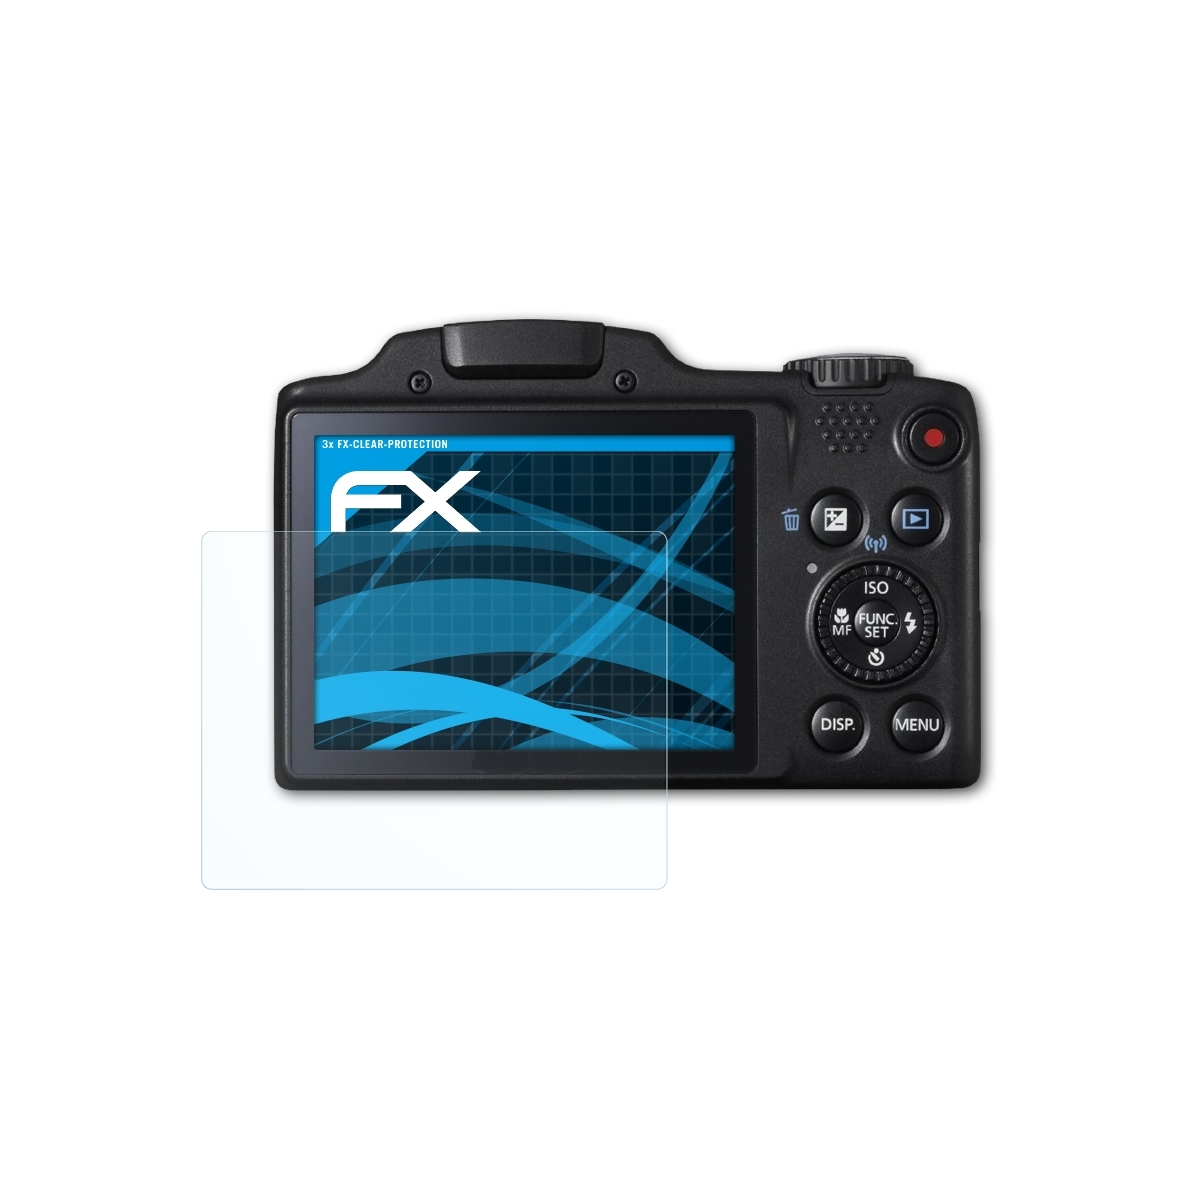 ATFOLIX 3x SX510 FX-Clear Canon PowerShot HS) Displayschutz(für